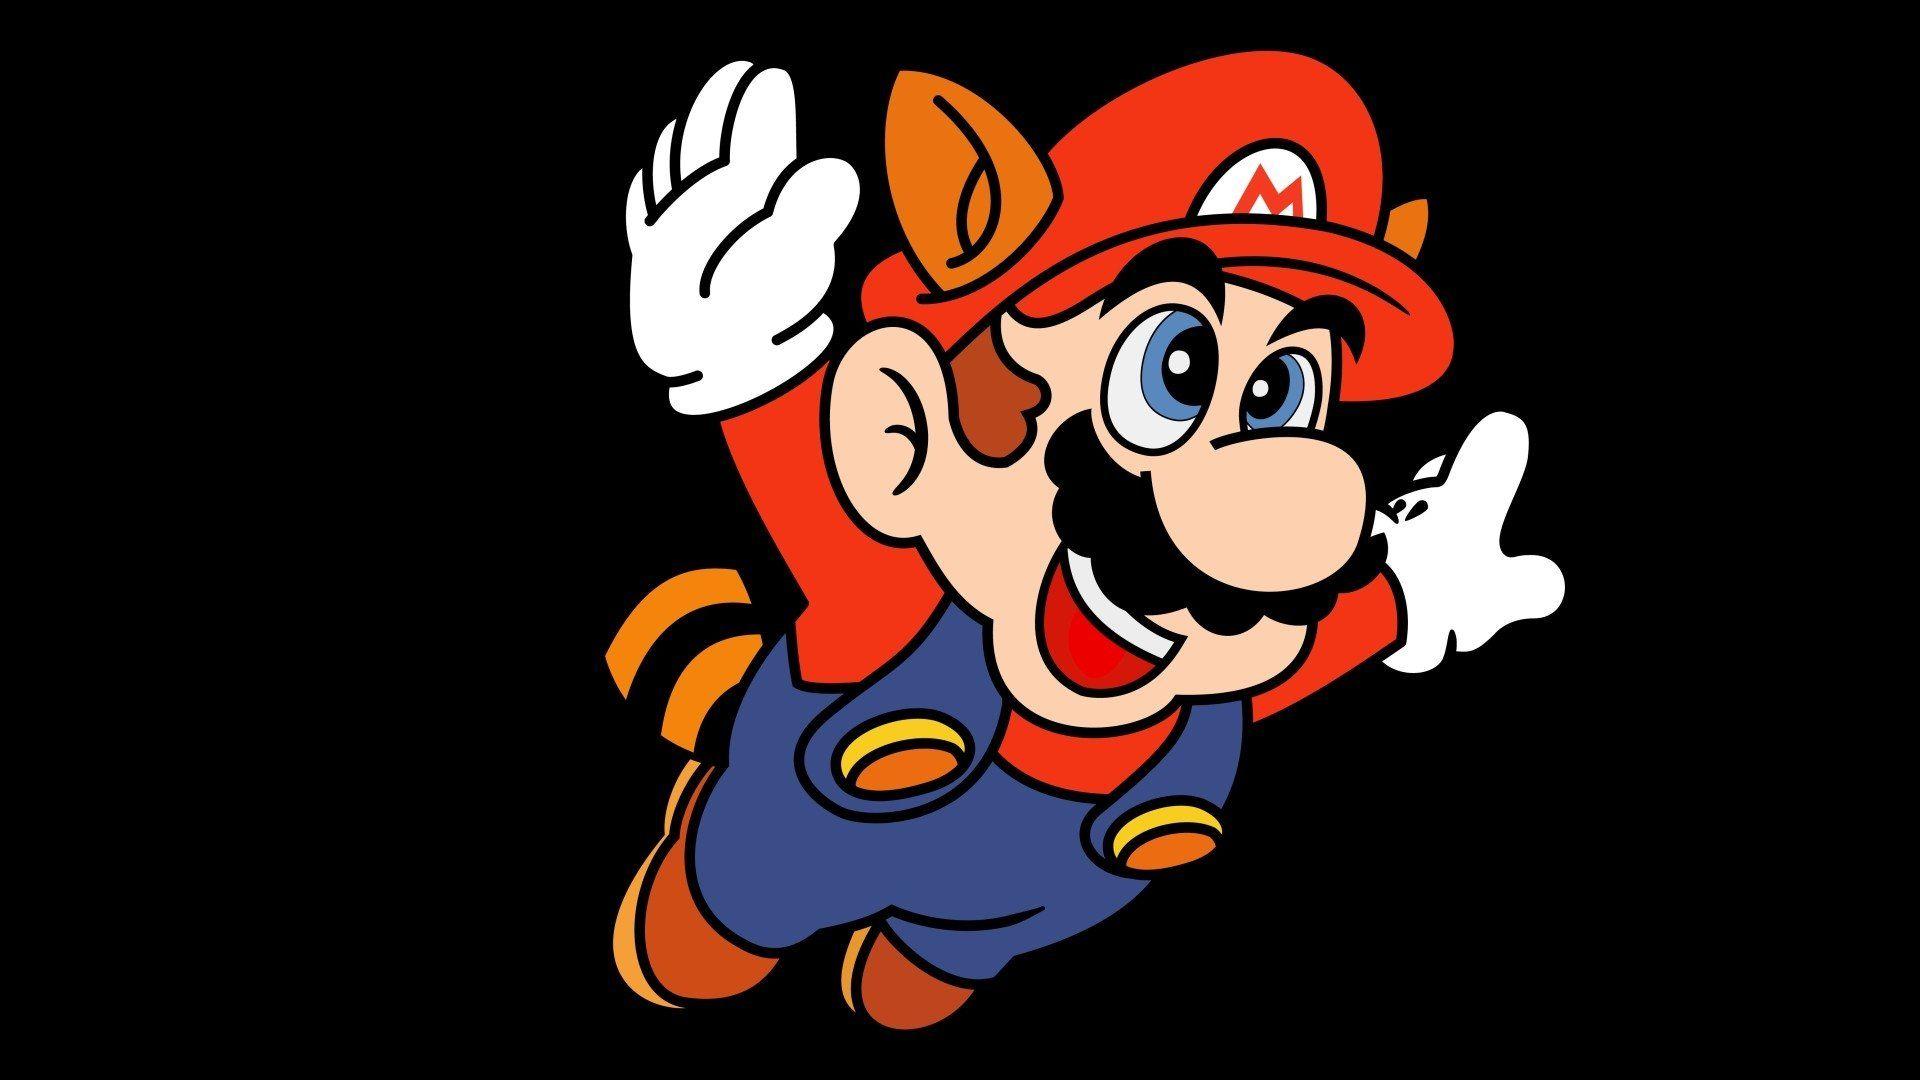 Mario brothers. Супер Марио супермарио. Супер Марио БРОС 4. Супер Марио БРОС 3. Картина Марио.